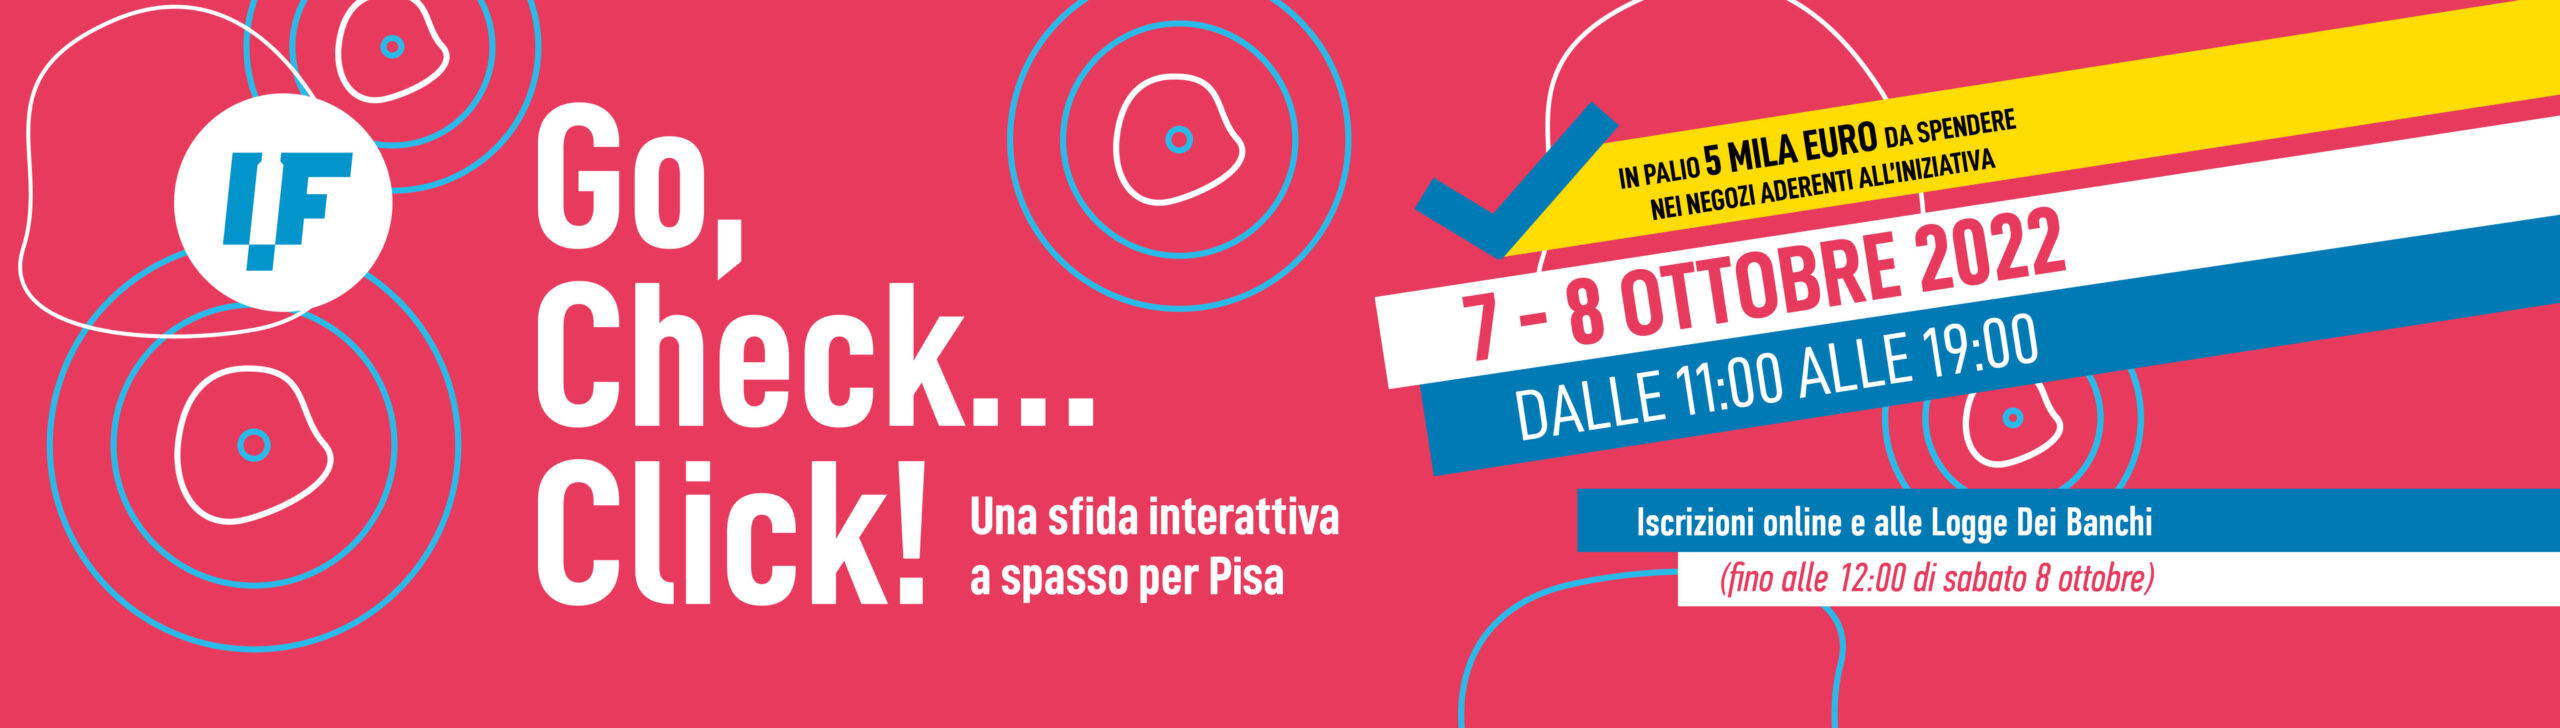 Internet Festival 2022 - Go, Check... Click!